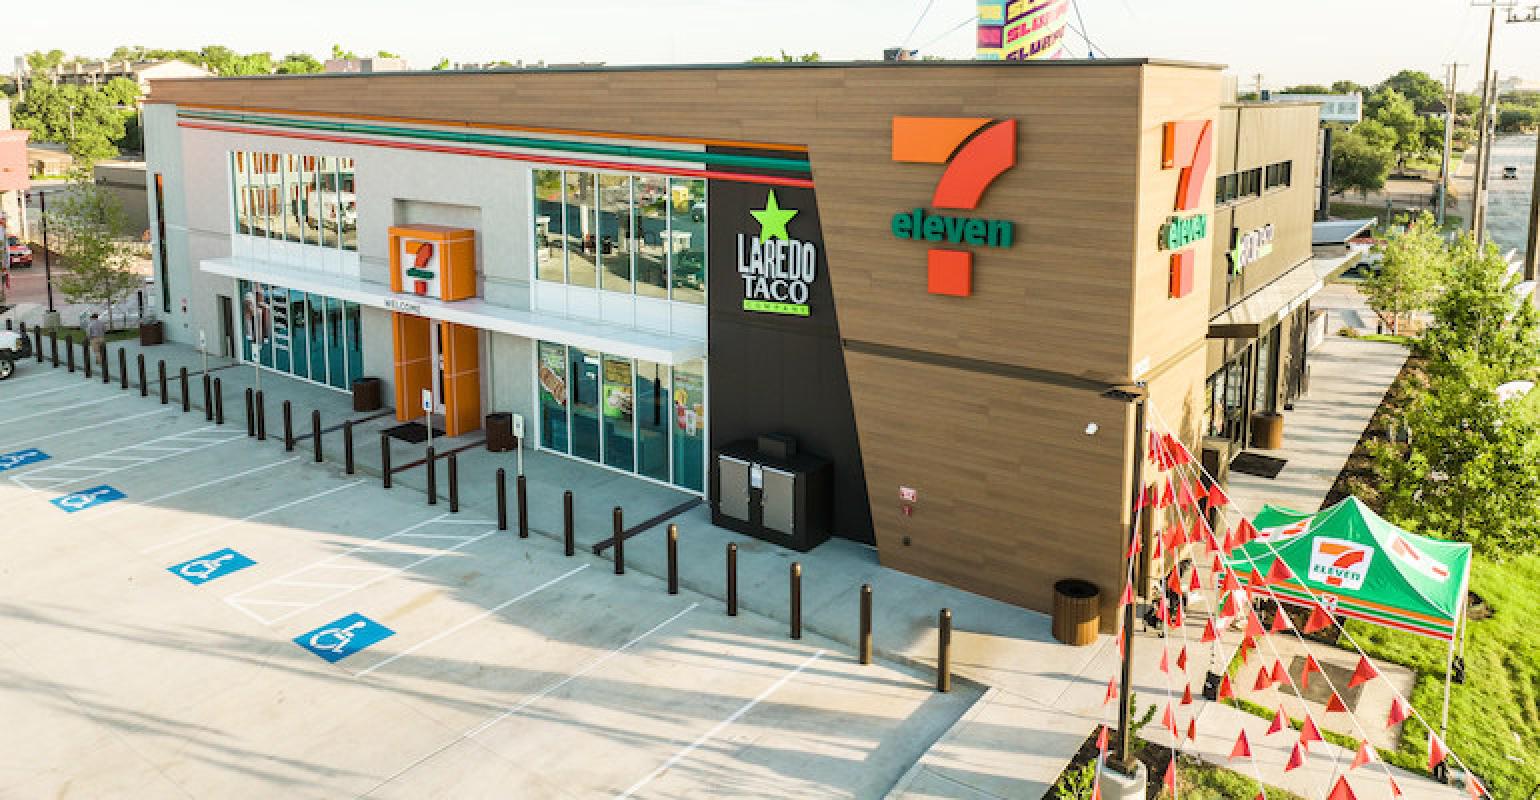 7-Eleven Opens New Evolution Store in Dallas - CStore Decisions